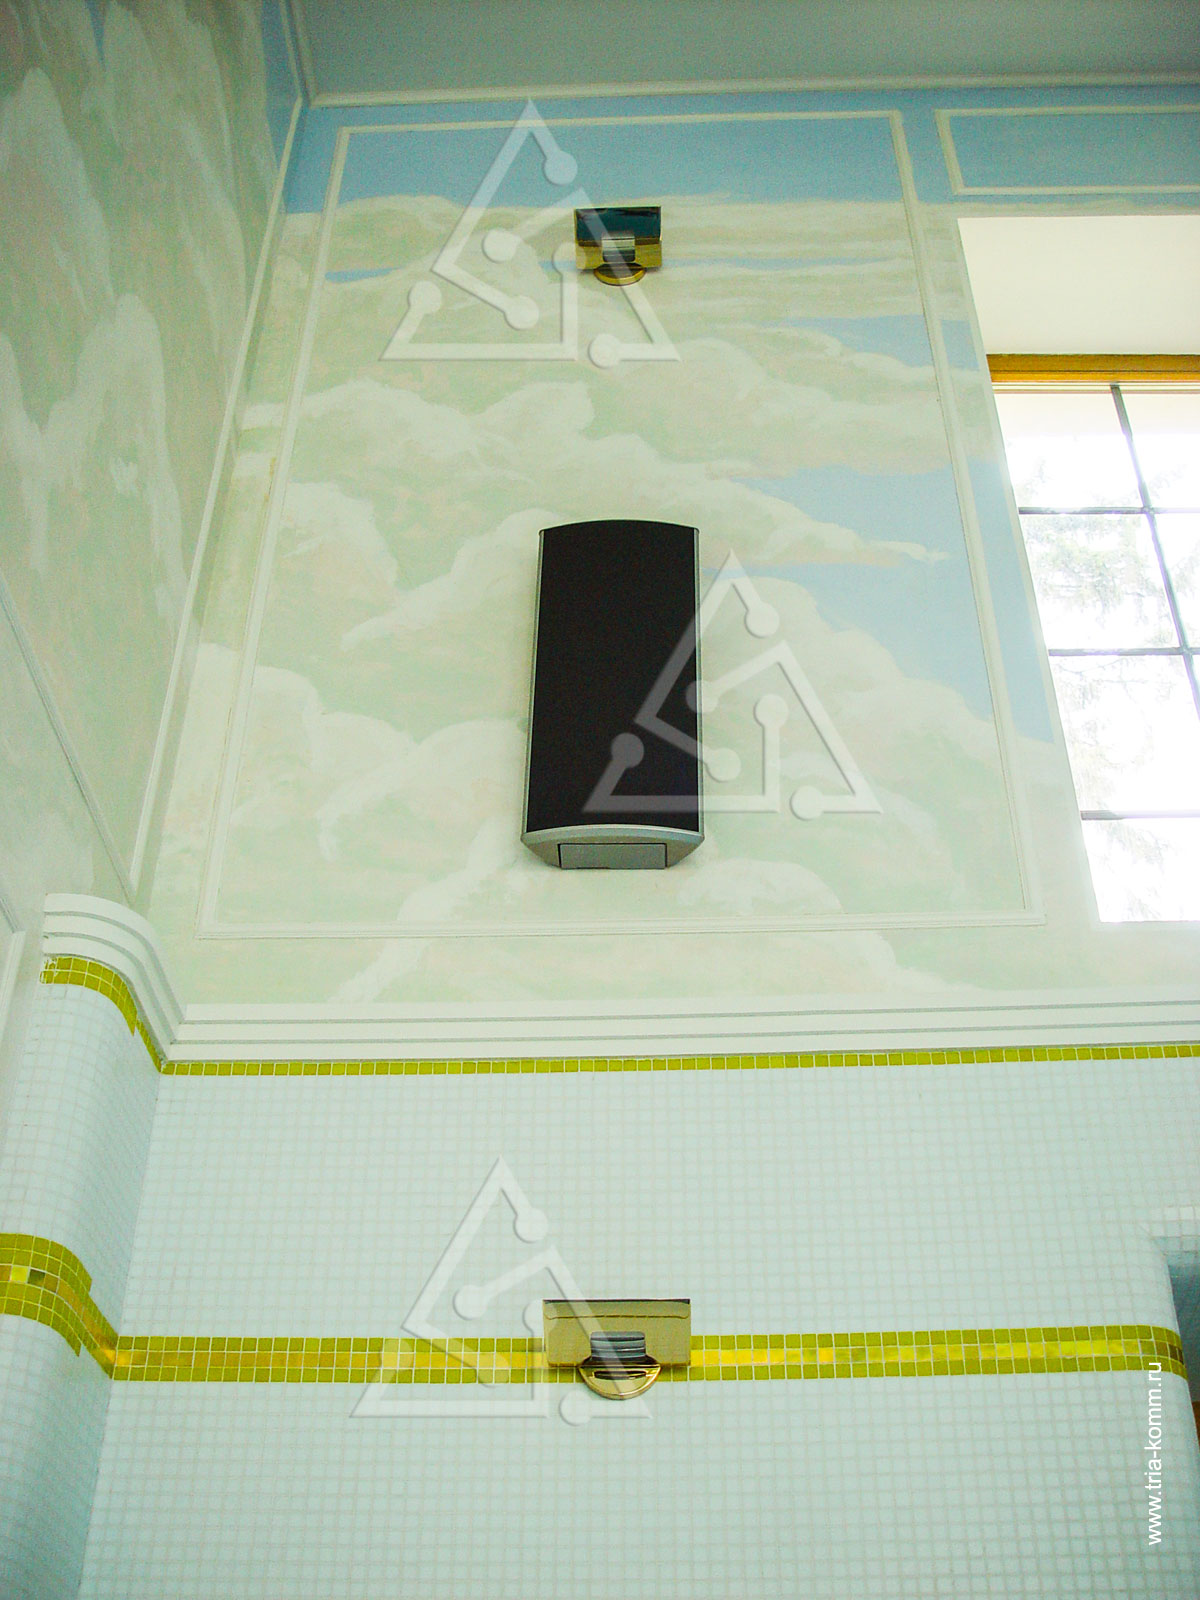 Фото аудиоколонки мультирум и источников освещения на стене в бассейне коттеджа